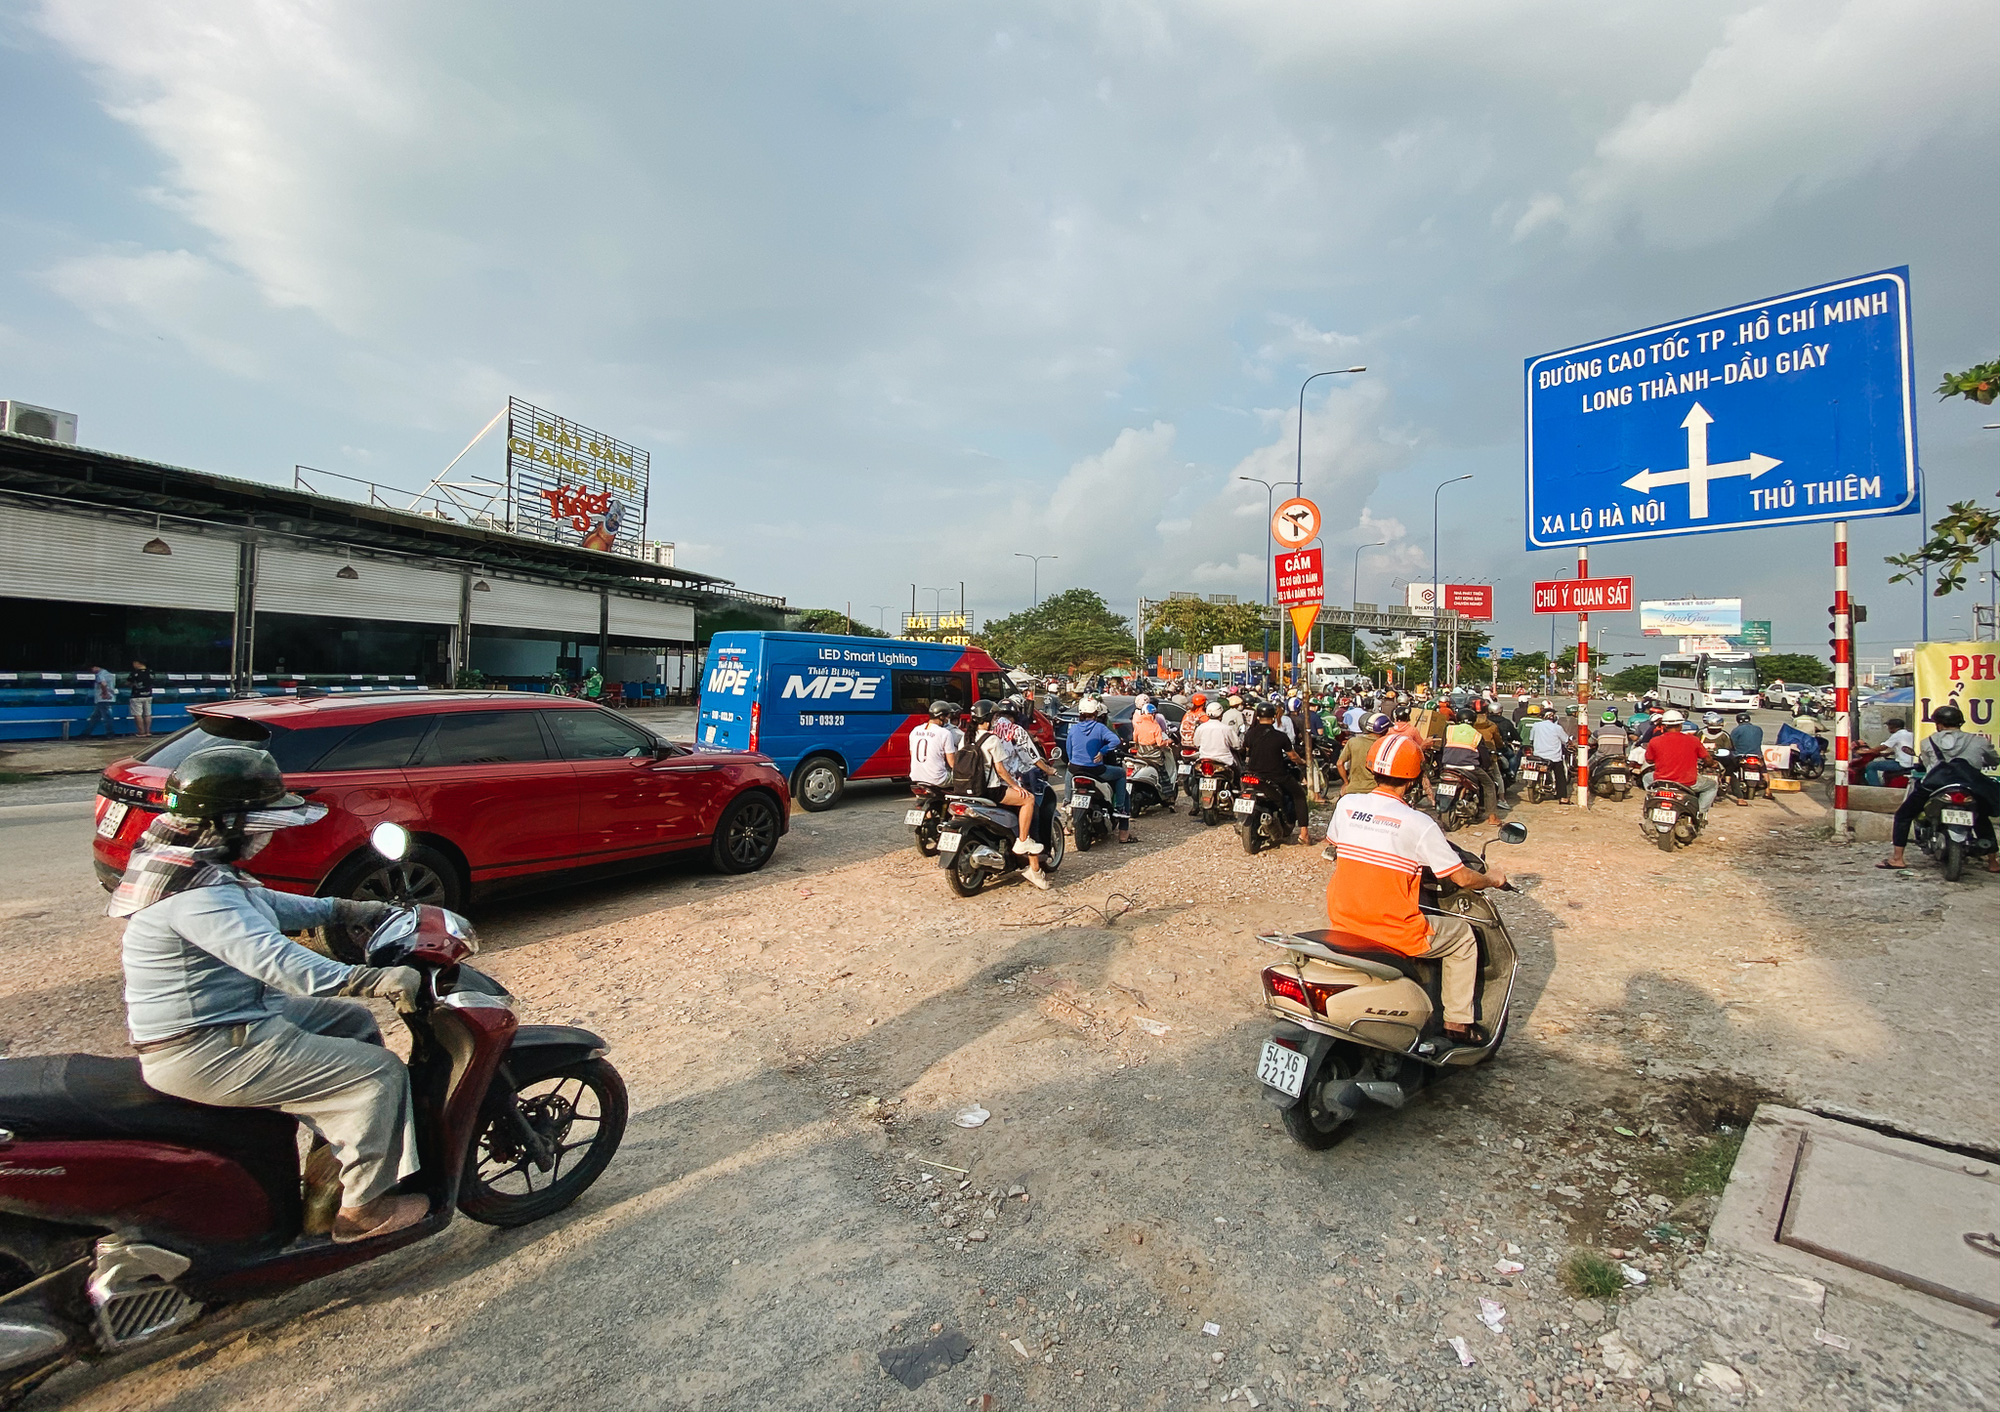 Gần 2,5km đường ở Sài Gòn giá hơn 800 tỷ nhưng làm 5 năm chưa xong: Người dân than trời vì ổ gà, bụi và nước ngập - Ảnh 2.